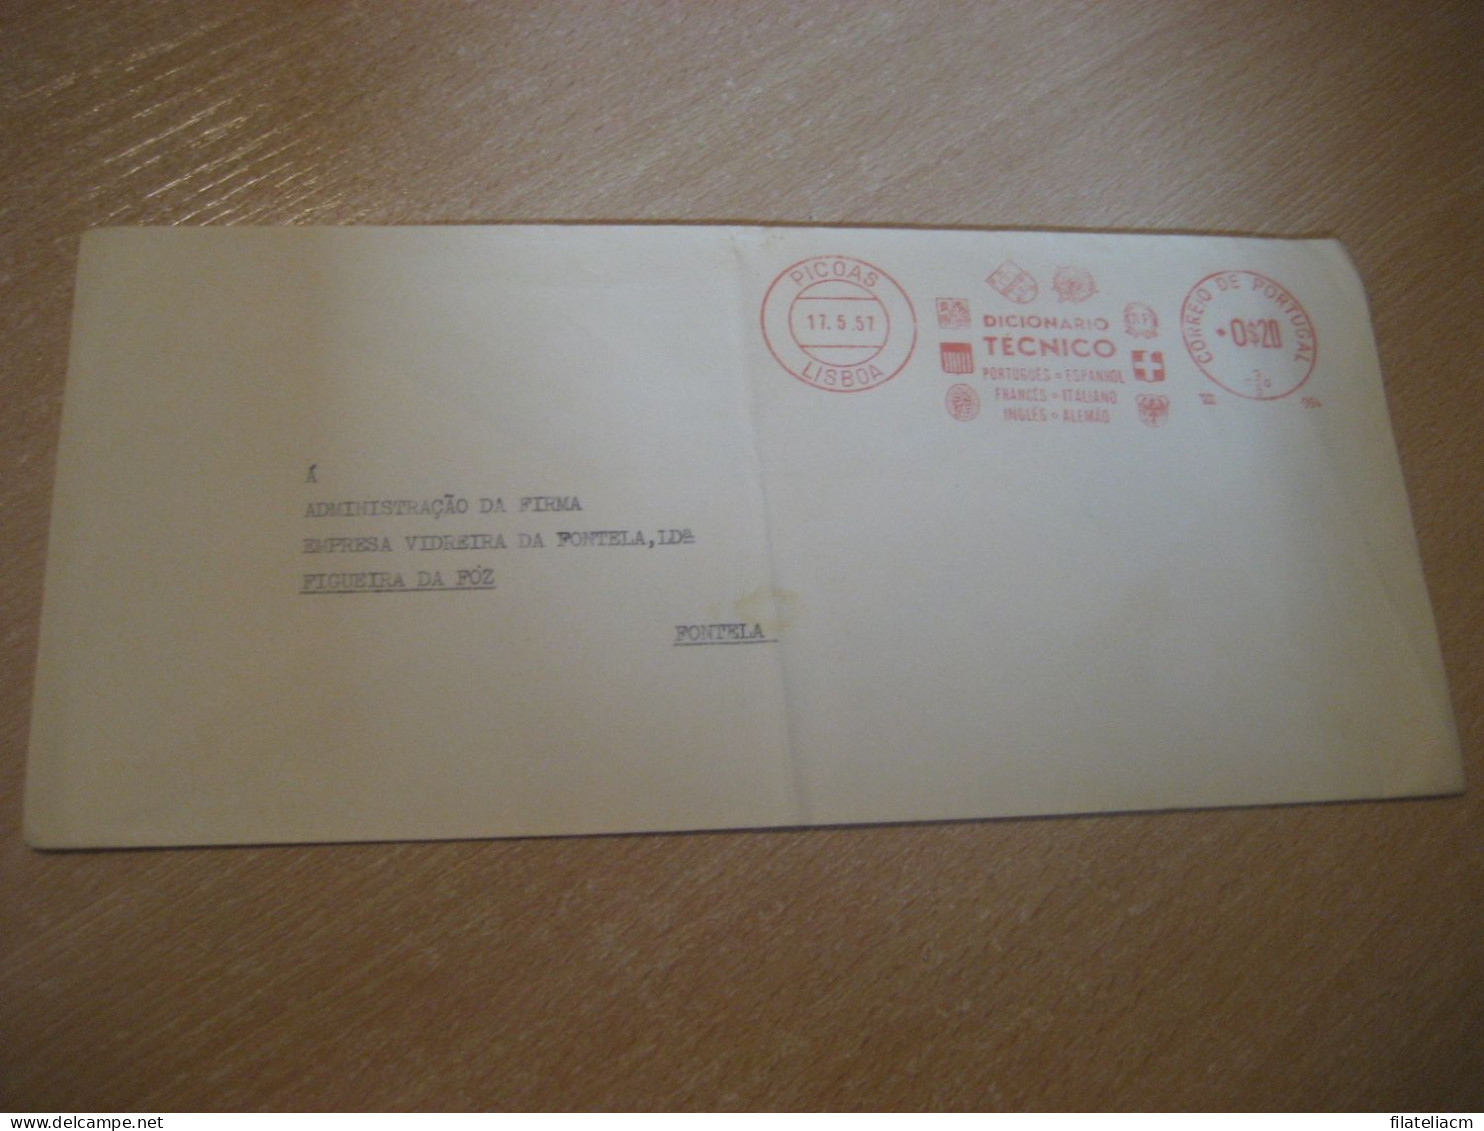 LISBOA 1957 To Figueira Da Foz Fontela Dicionario Tecnico Meter Mail Cancel Cover PORTUGAL - Cartas & Documentos